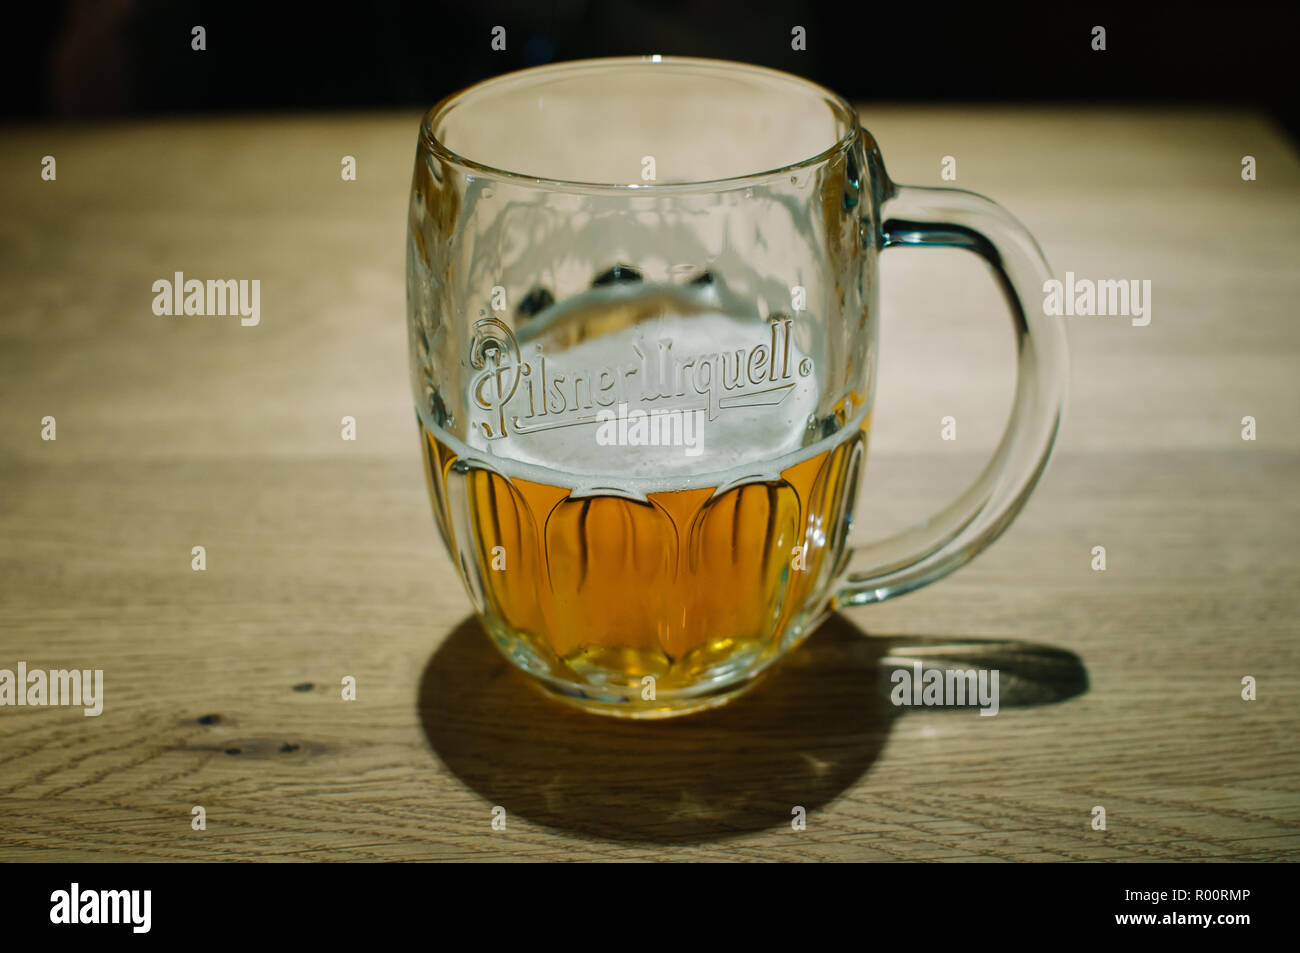 Bicchiere mezzo pieno di birra ceca Pilsner Urquell, a Praga, Repubblica Ceca Foto Stock